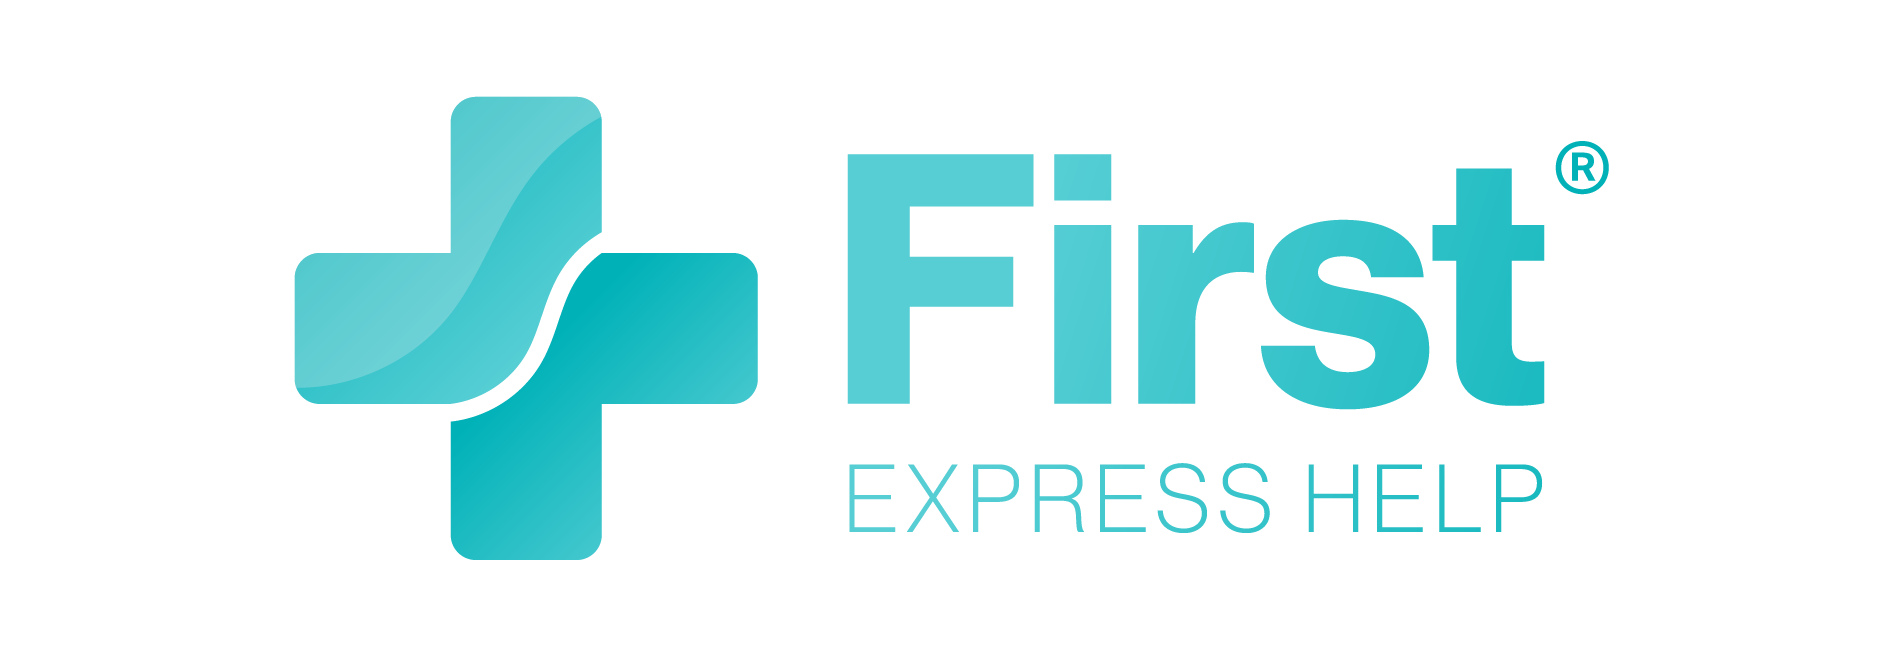 First Express Help